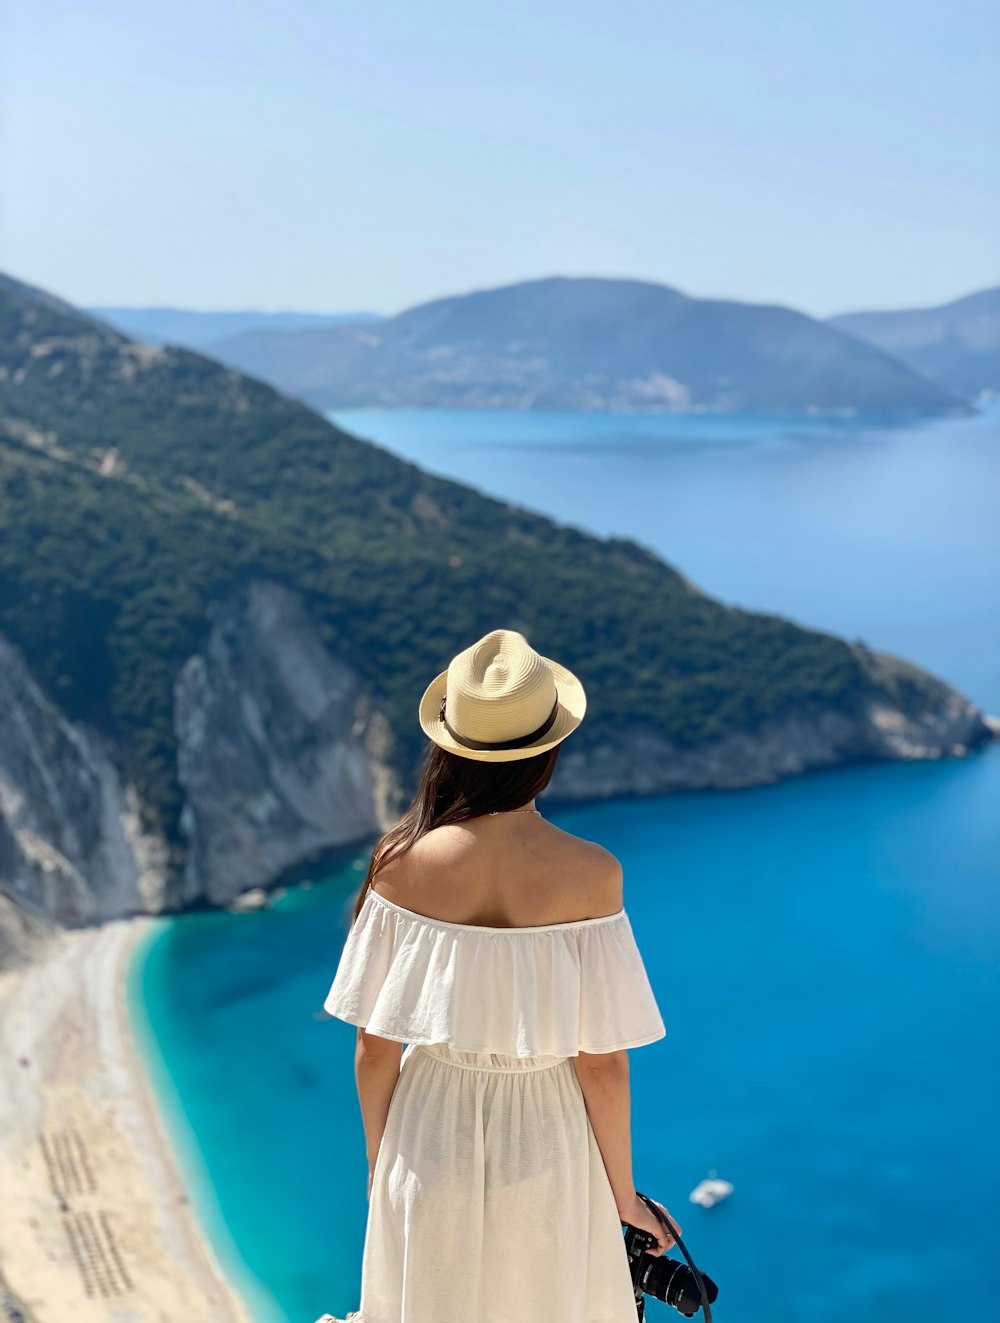 하얀 드레스와 모자를 쓴 여자가 바다를 바라보고 있다